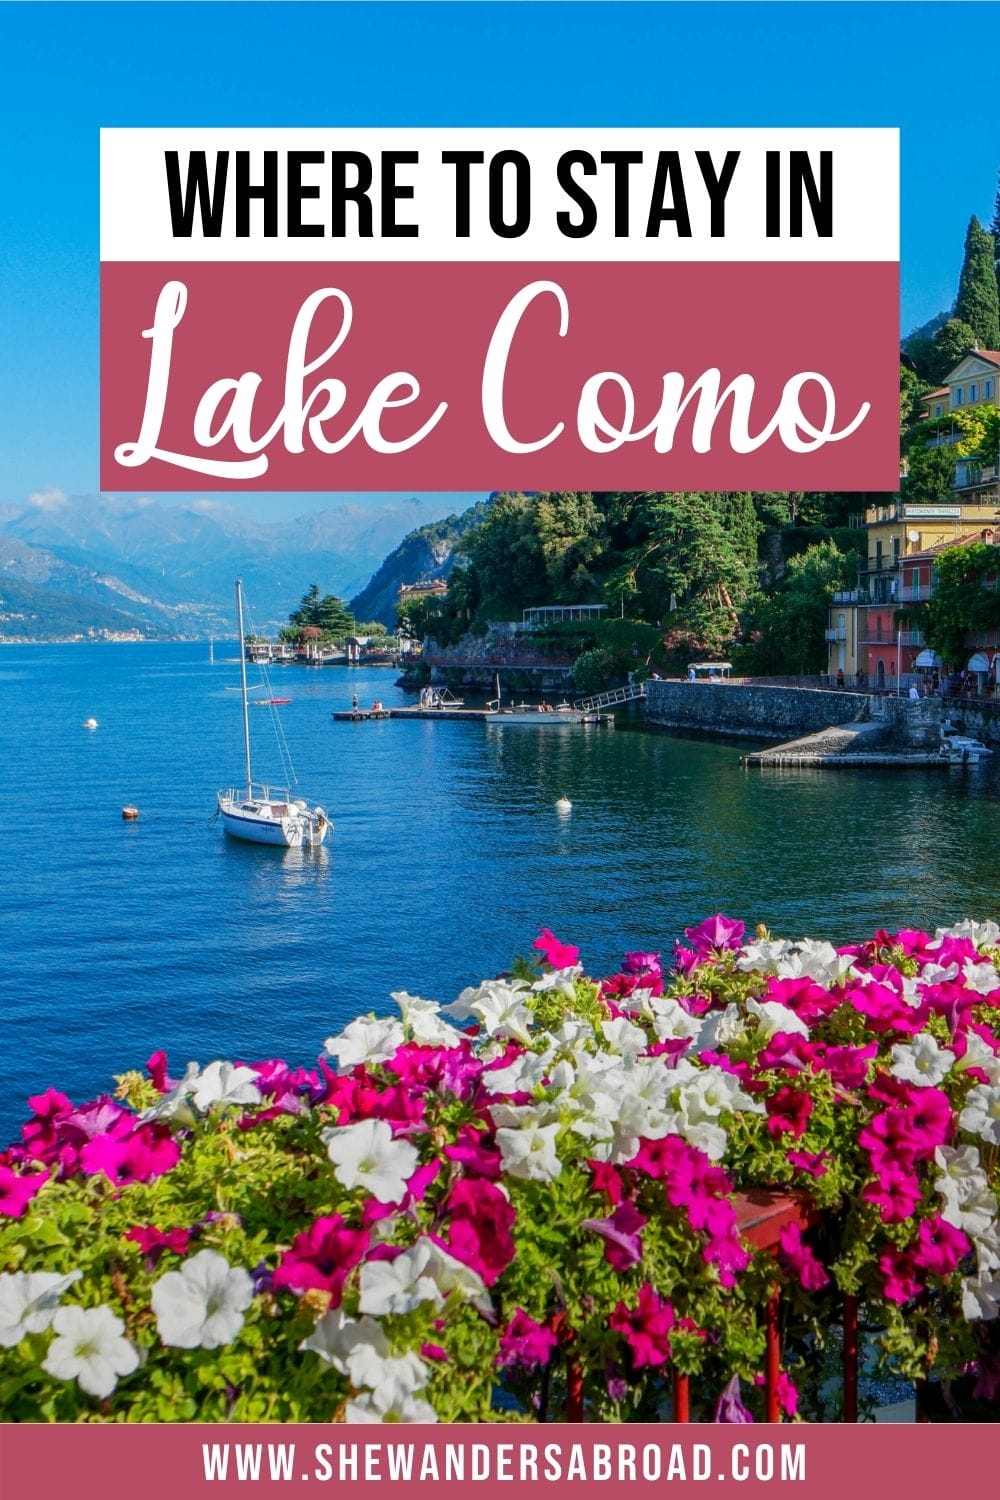 Parhaat majoituspaikat Comojärvellä: Best Towns Hotels